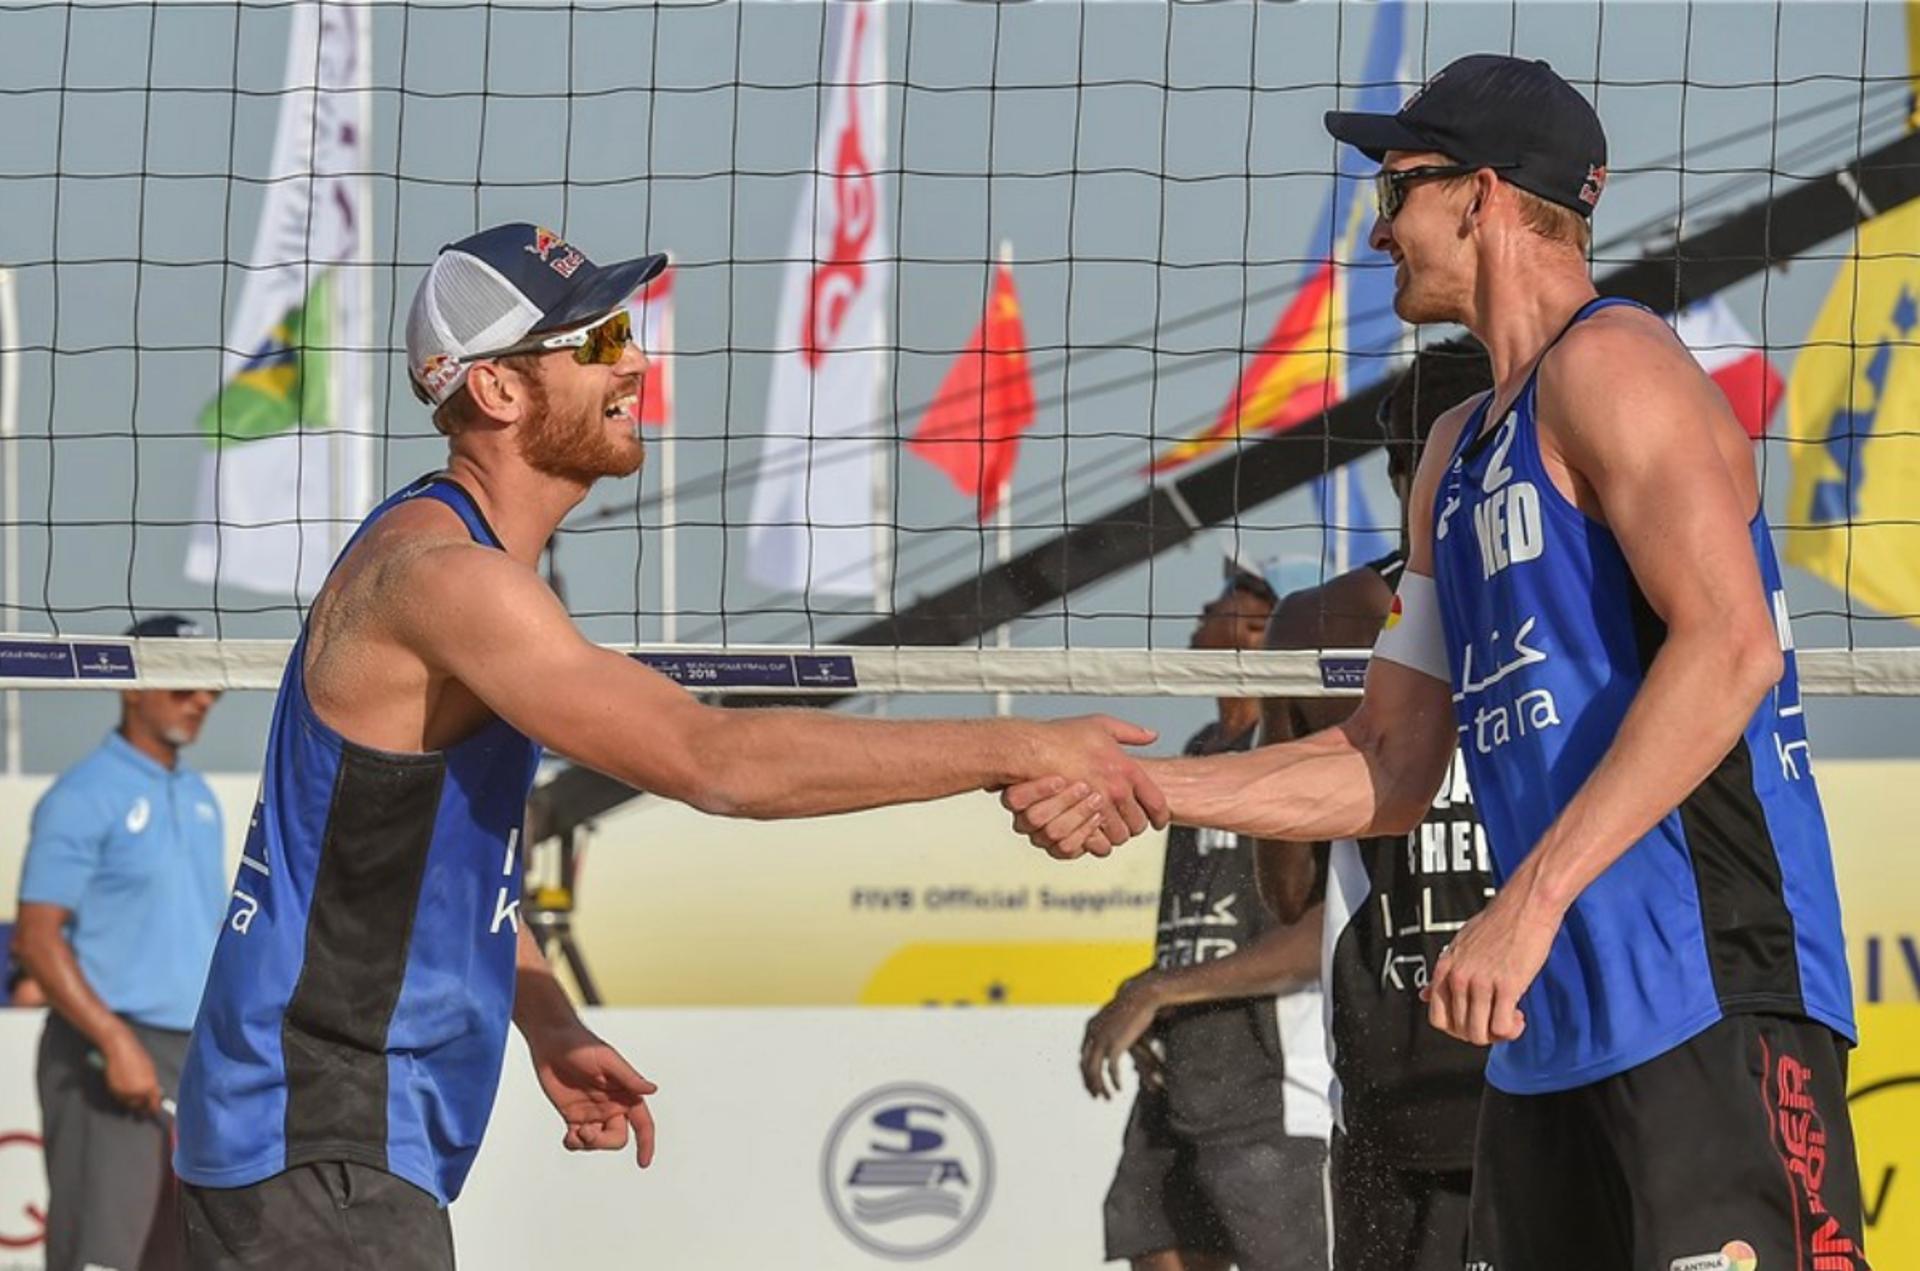 Circuito Mundial de Vôlei de Praia - Alexander Brouwer e Robert Meeuwsen